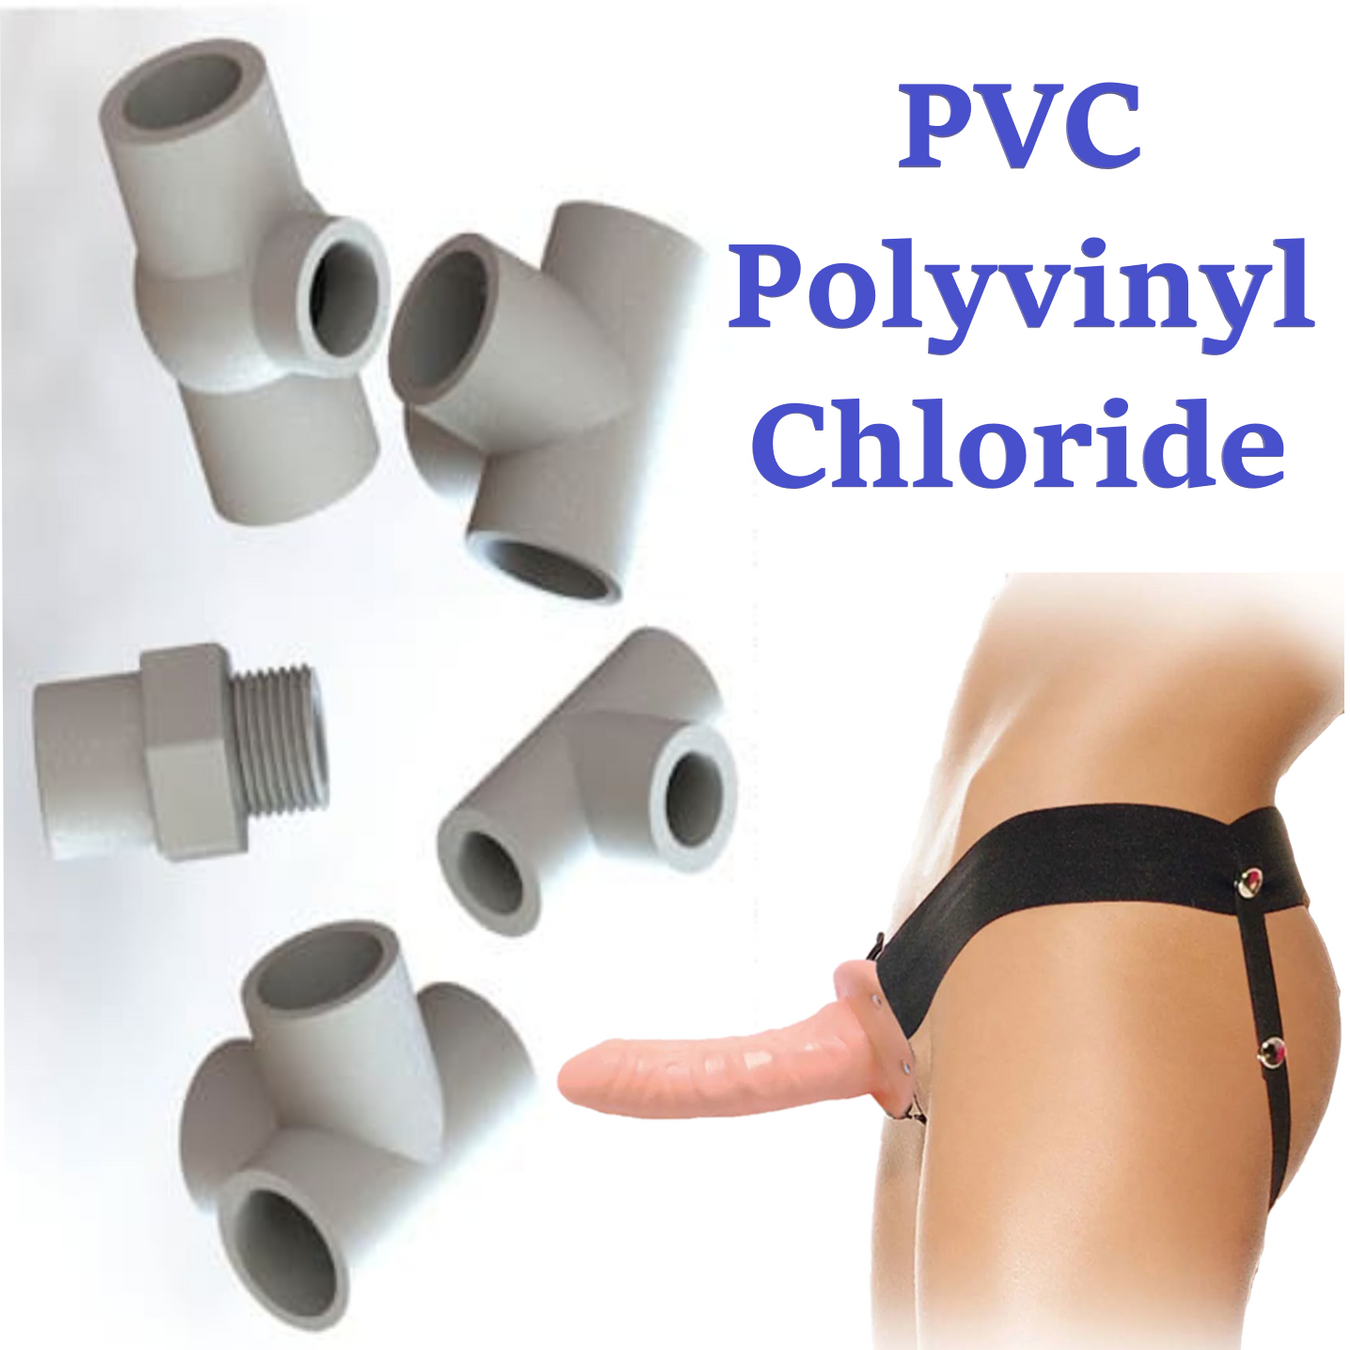 PVC - Polyvinyl Chloride